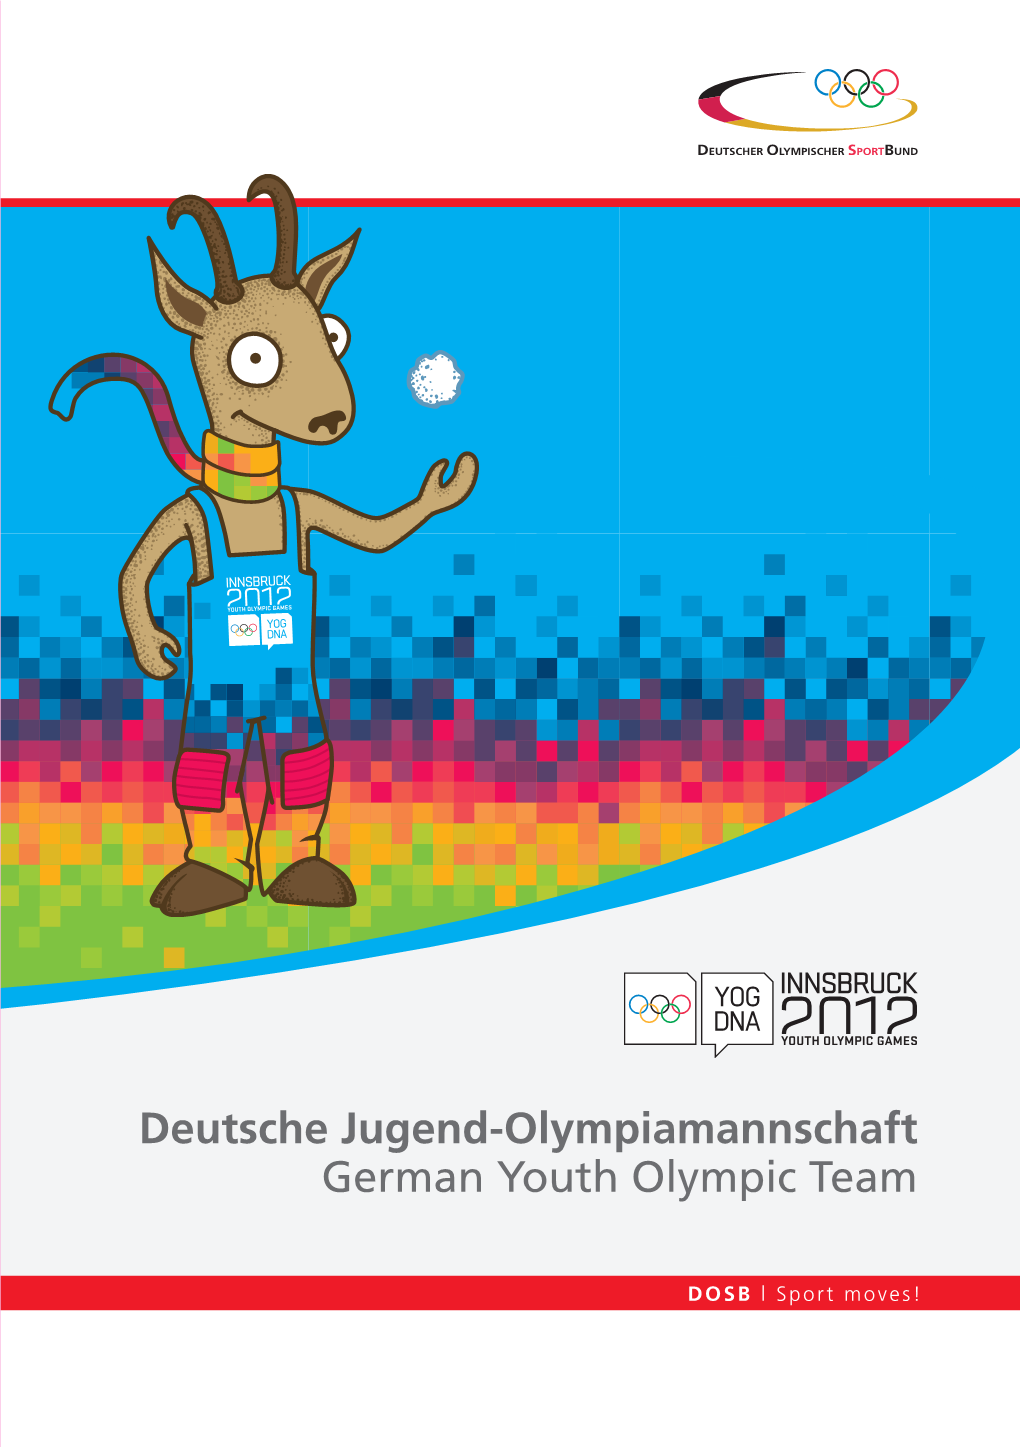 Deutsche Jugend-Olympiamannschaft Besteht Aus 57 Motivierten Athle Ten, Athleten Aus Über 60 Nationen Haben Werdet